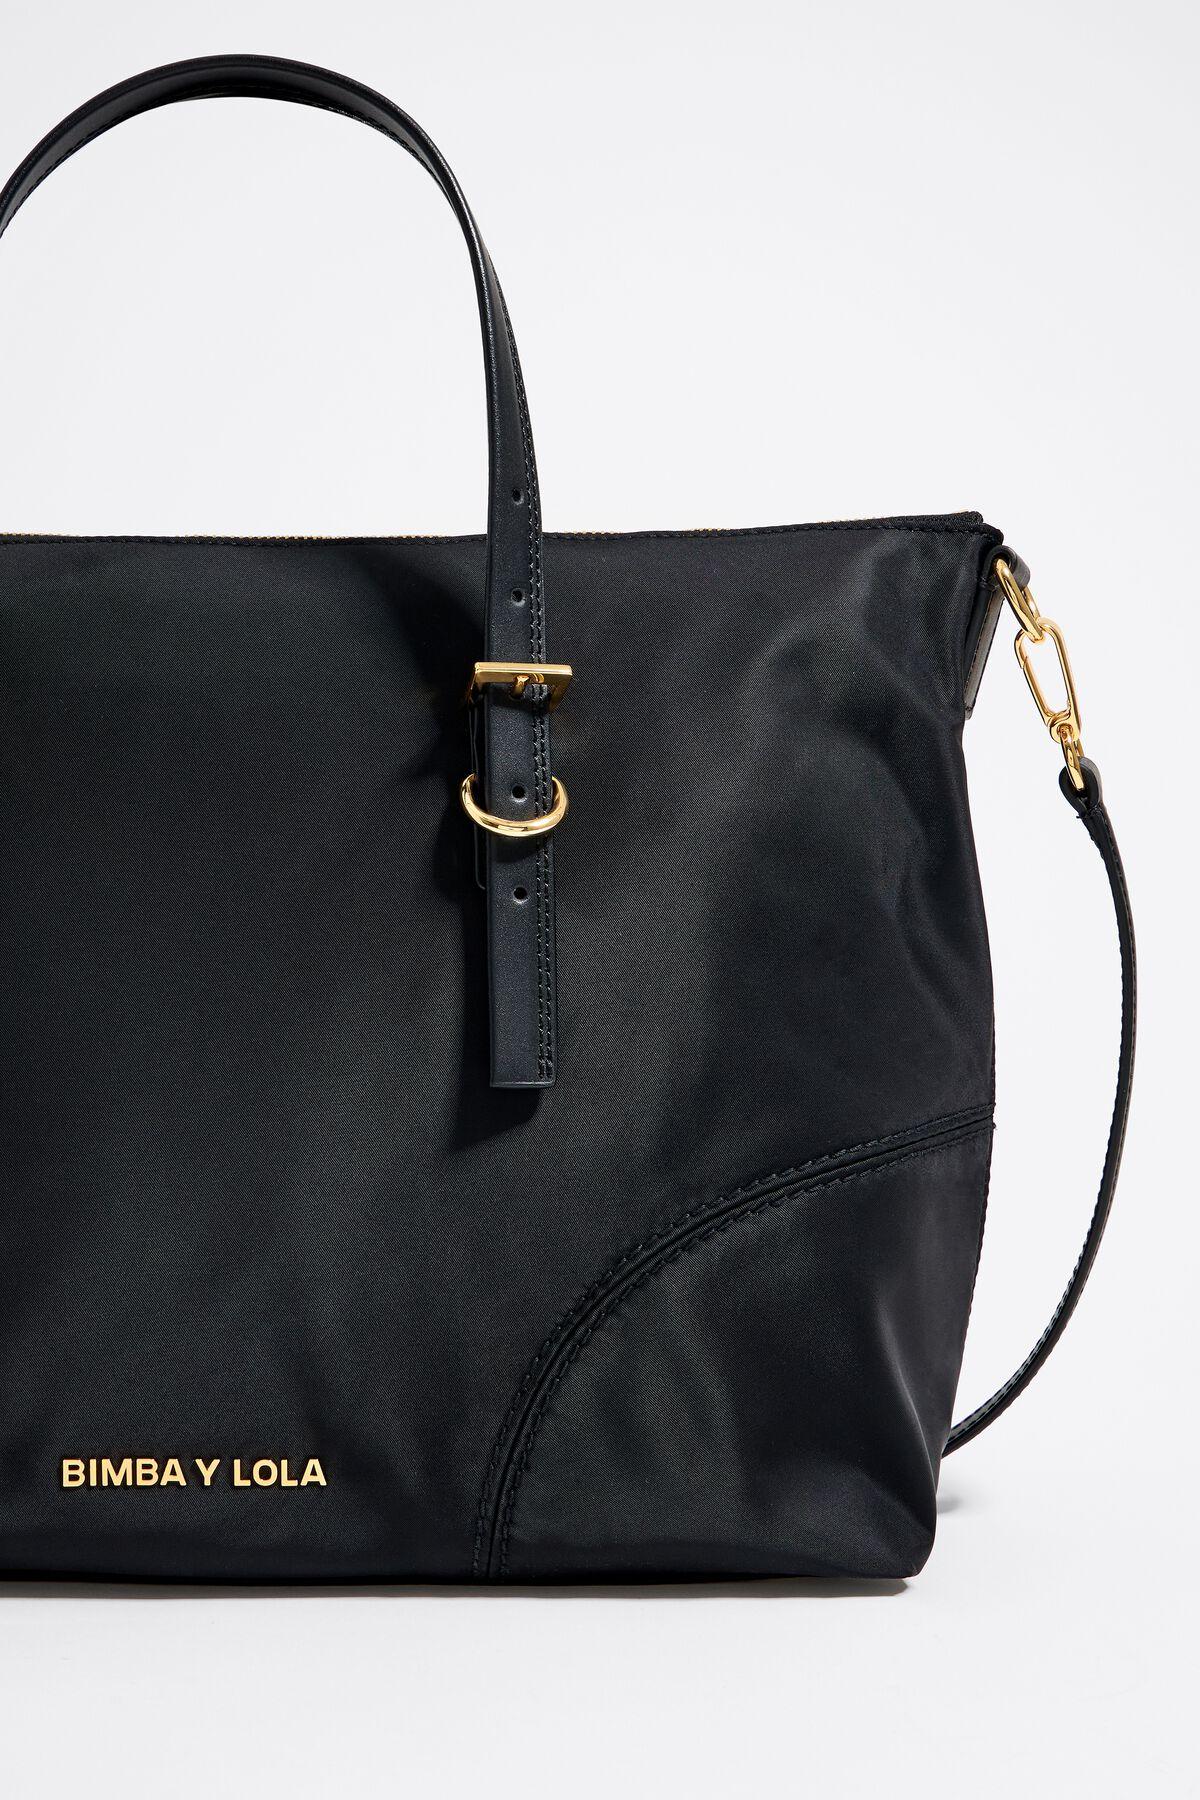 Bimba Y Lola bolso shopper de nailon negro accesorios X04B130 [X04B130] :  Creatividad audaz - Bimba Y Lola Peru, Bimba Y Lola bolsos inspirarse en  diversas influencias artísticas y colores vibrantes y